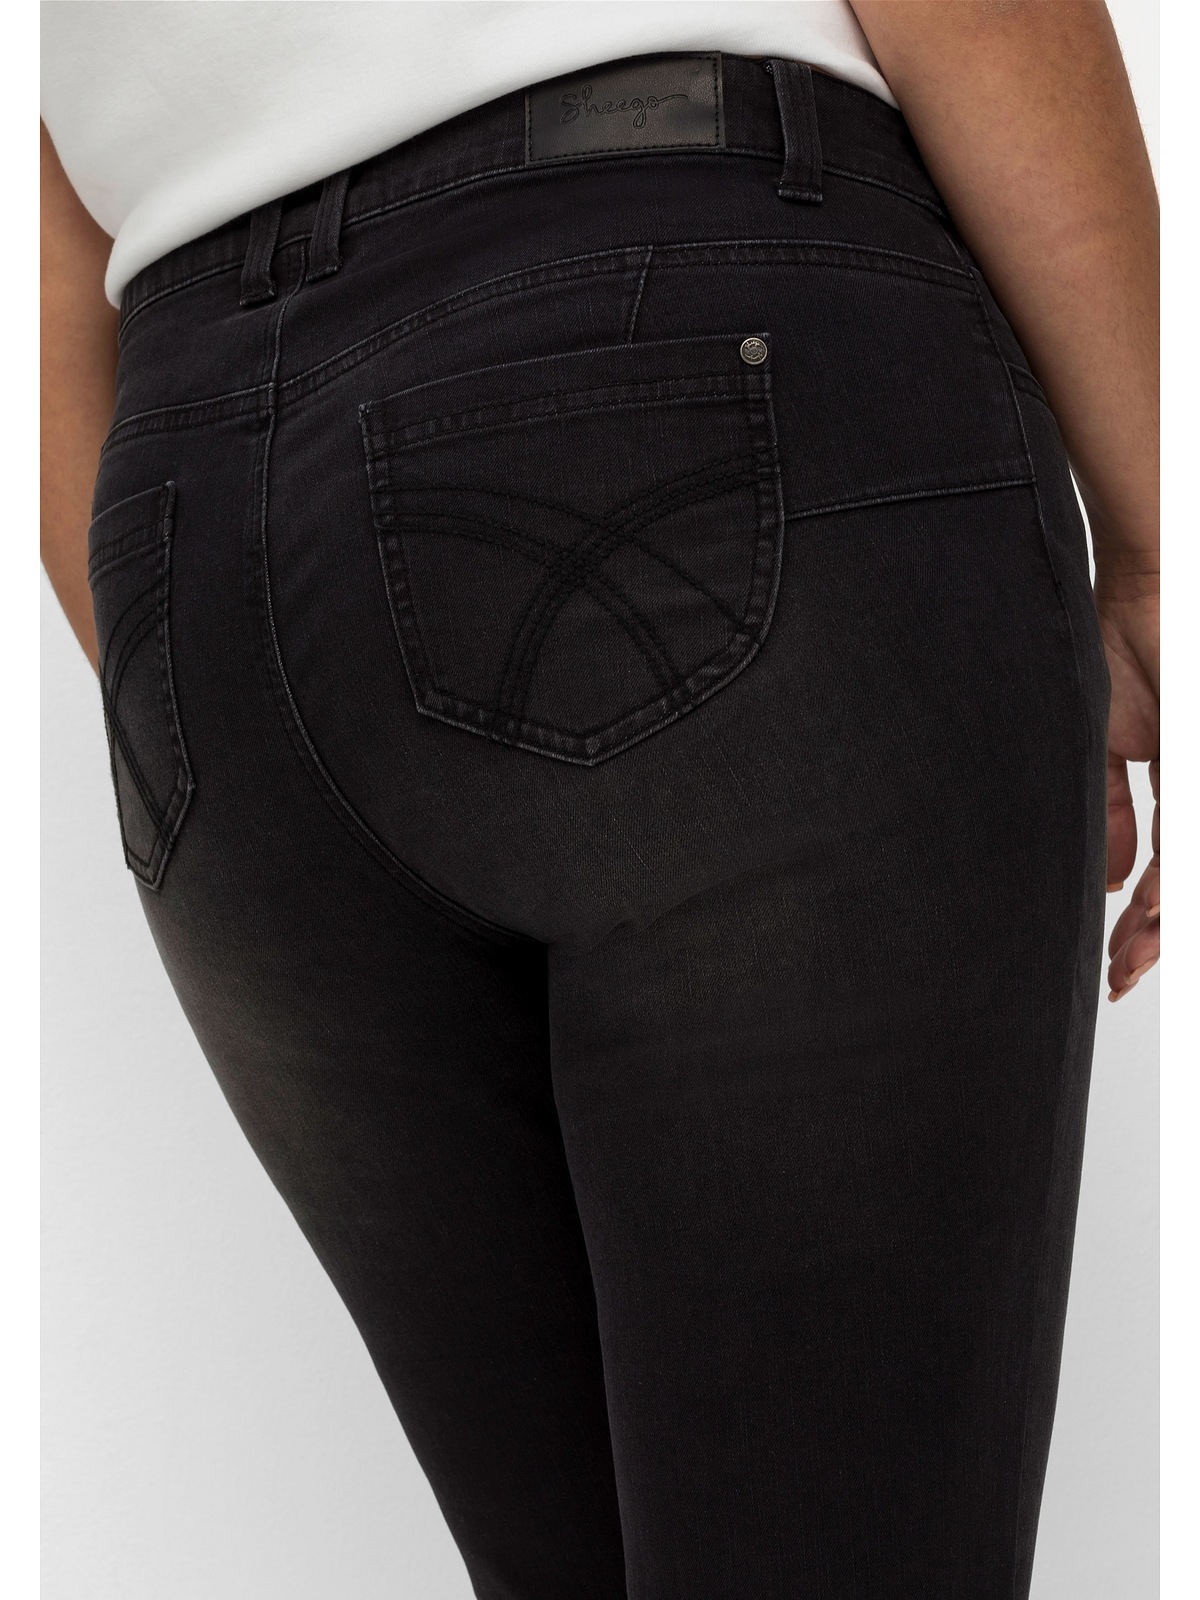 Sheego Stretch-Jeans und Größen«, Beine sehr für shoppen mehr Bauch »Große schmale